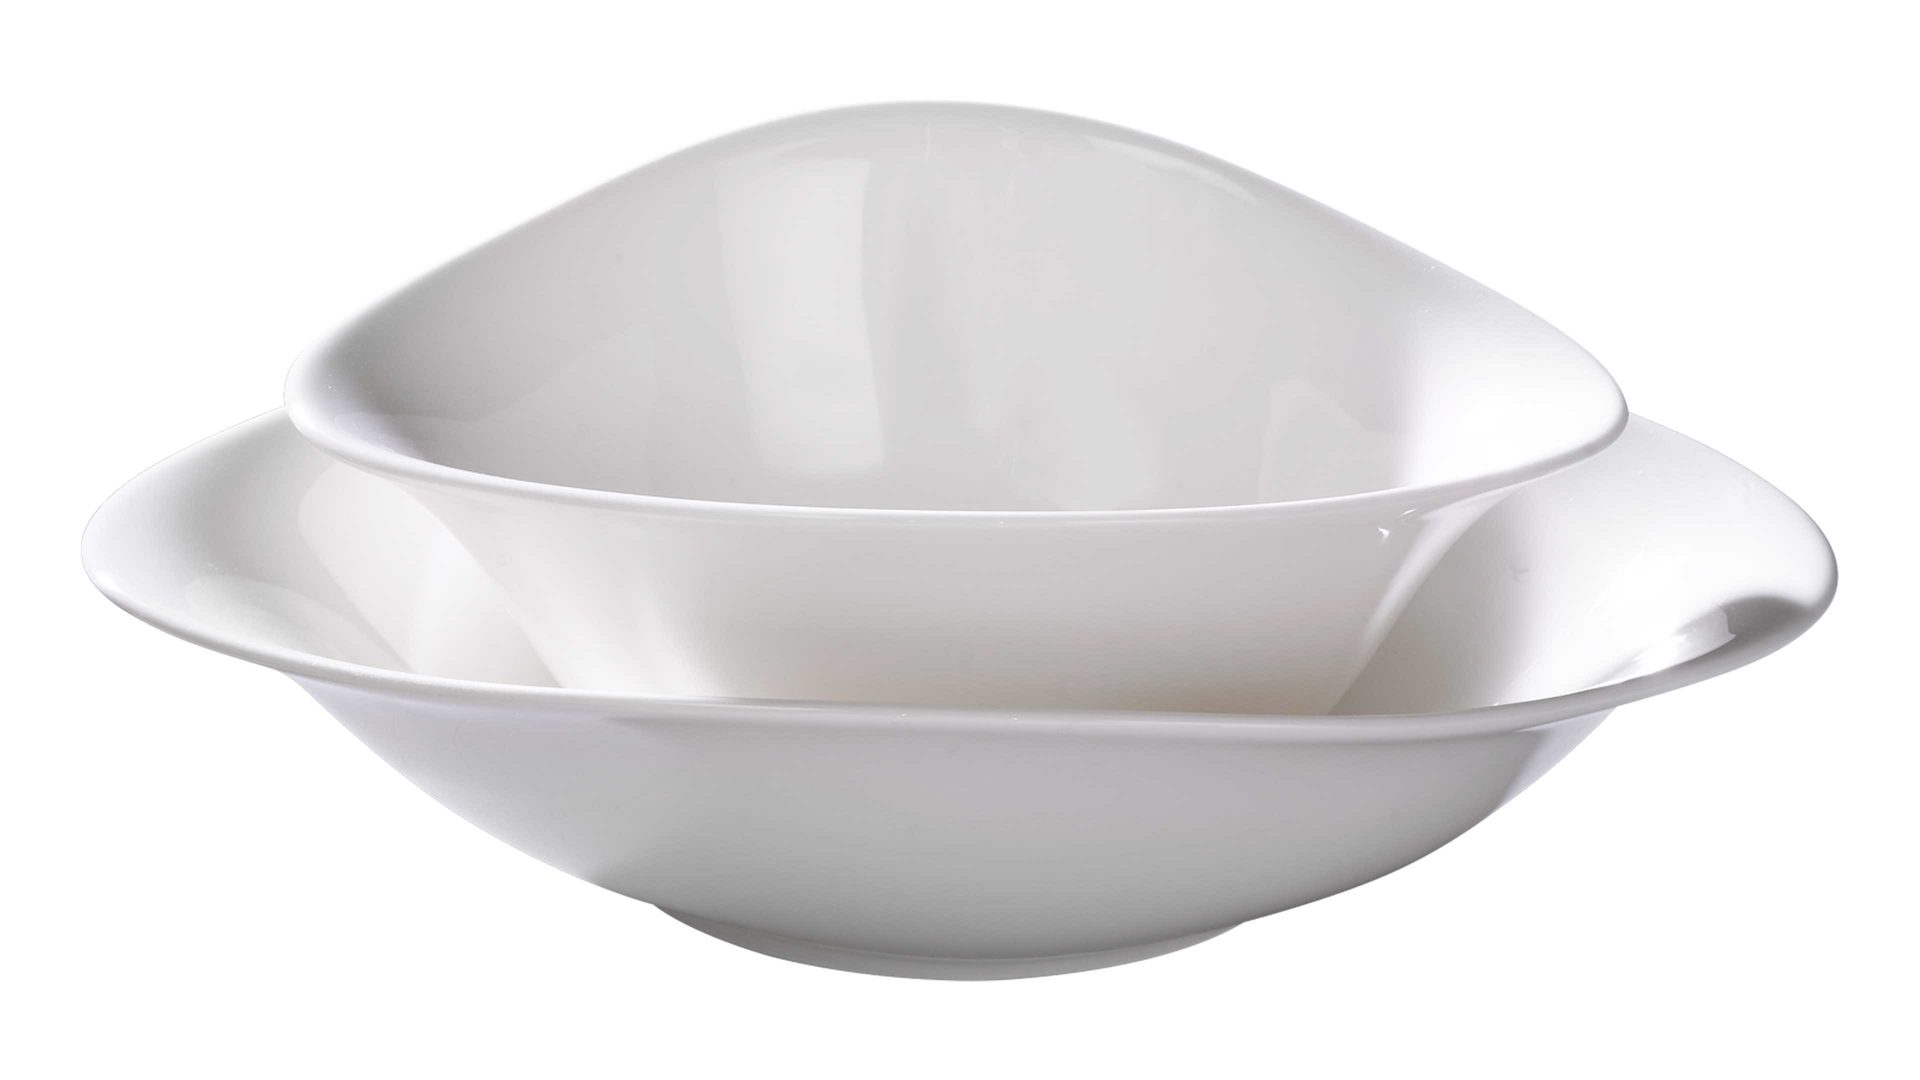 Teller Villeroy & boch aus Keramik in Weiß Villeroy & Boch Vapiano Pasta-Set weißes Premium-Porzellan - vierteilig